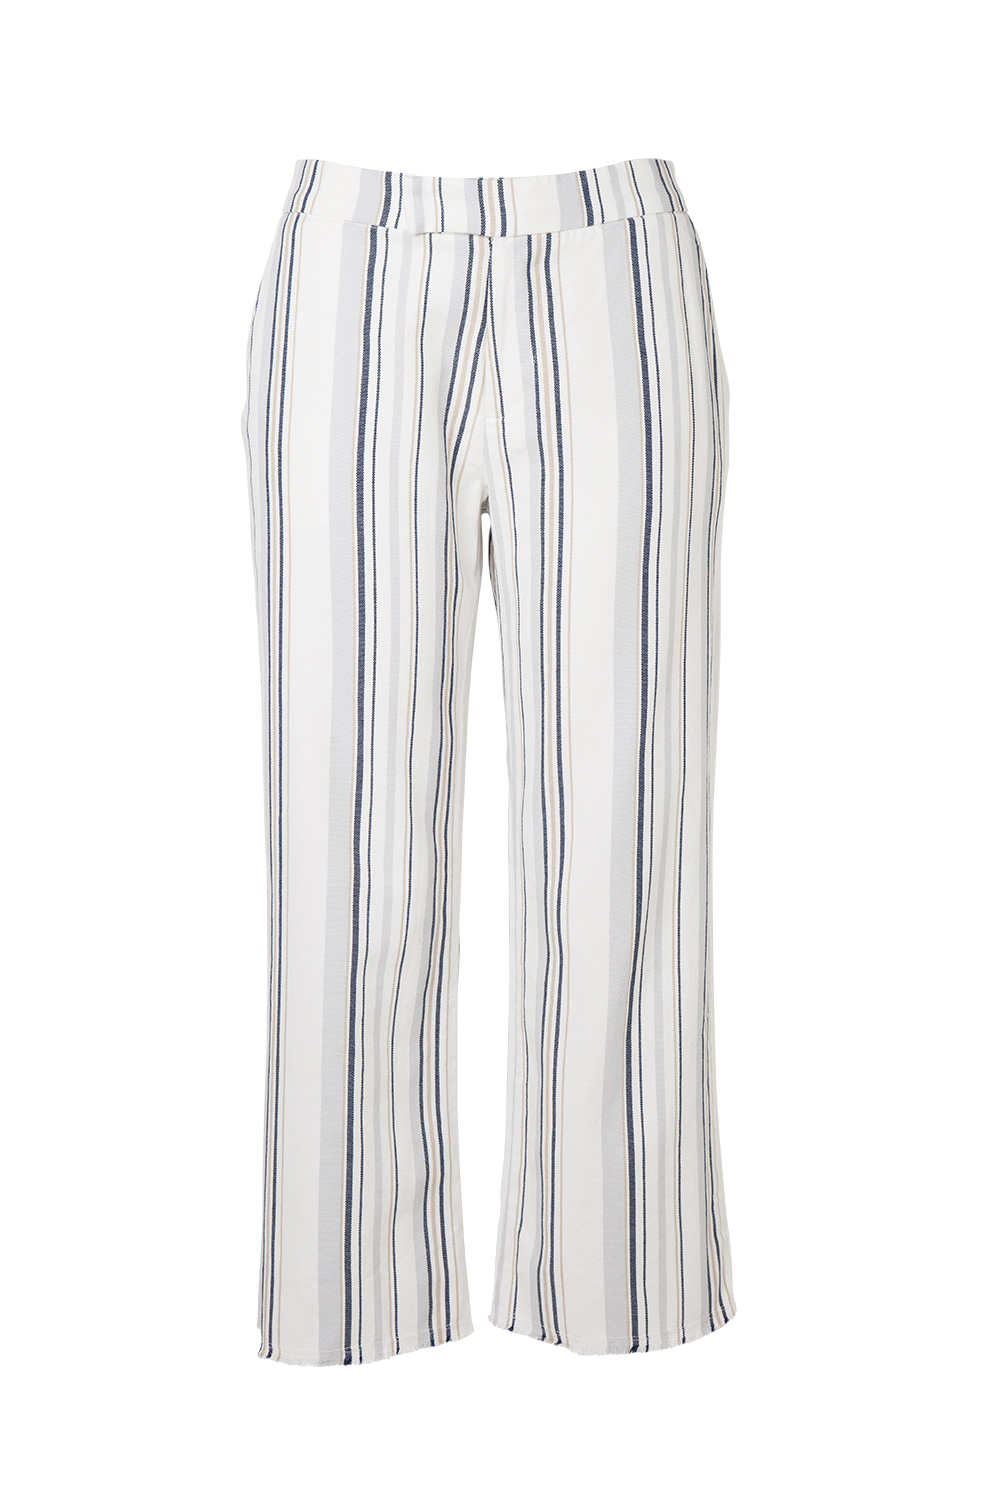 Velvet linen pants, $325, from Harry’s.